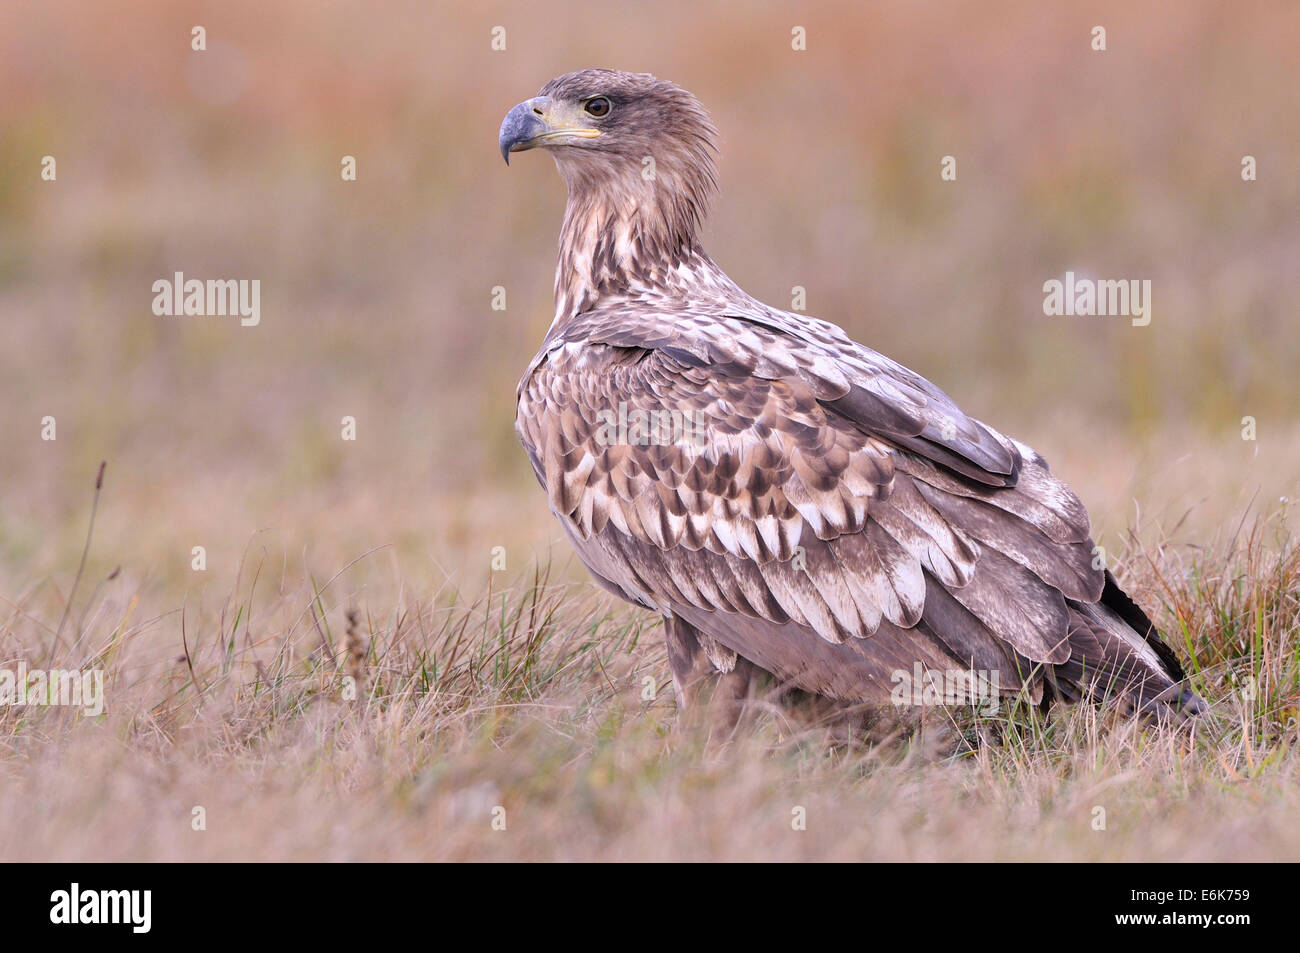 White-tailed Eagle (Haliaeetus albicilla) on an autumn meadow, Kuyavian-Pomeranian Voivodeship, Poland Stock Photo